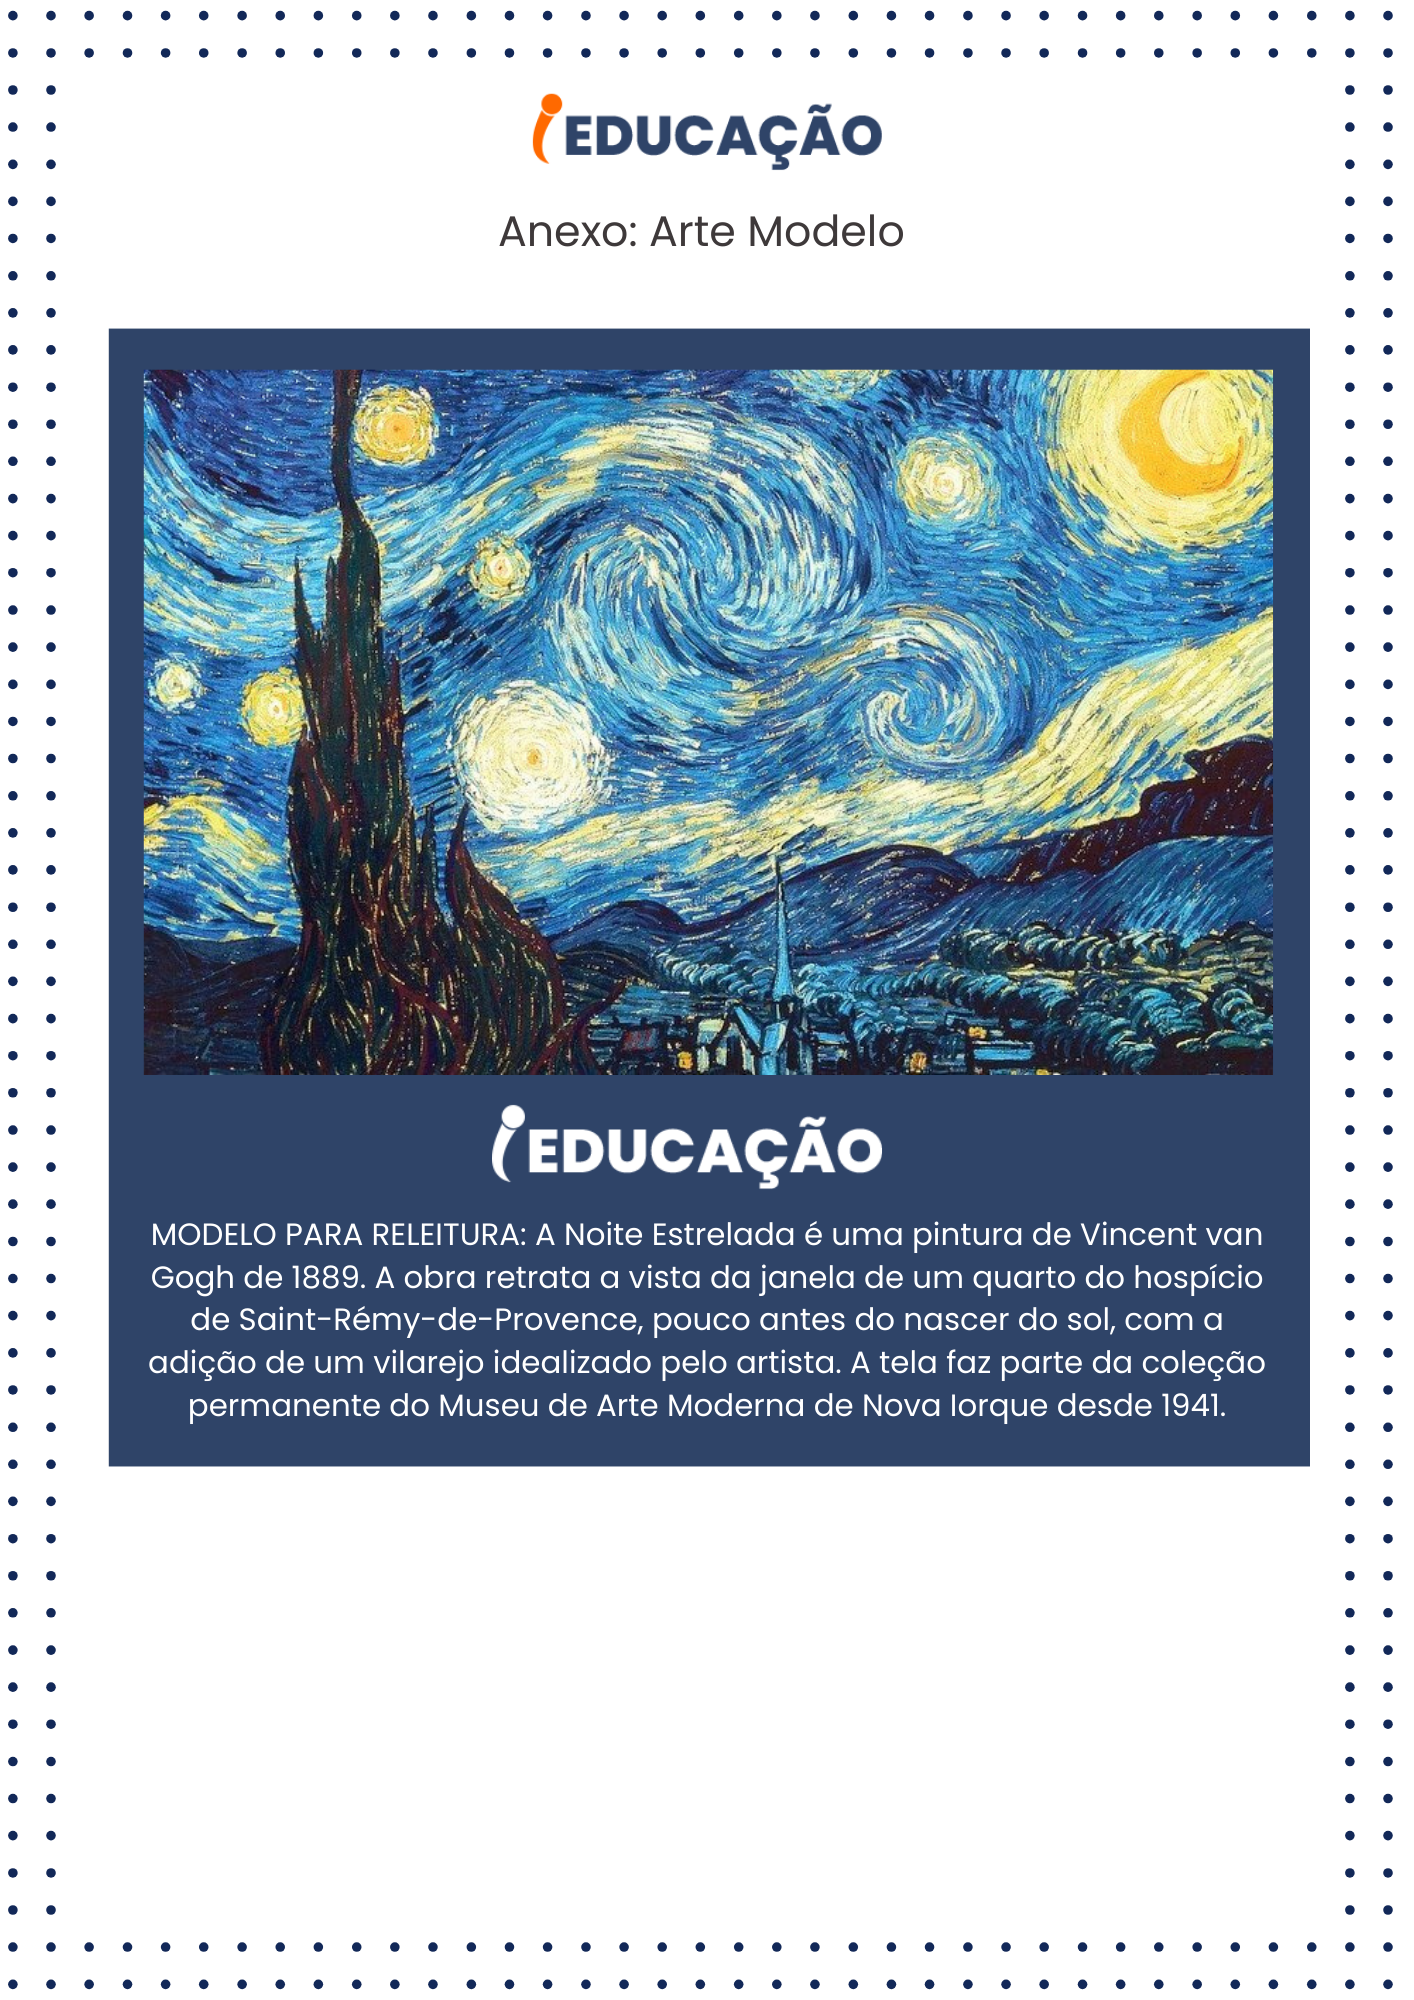 Atividade de Arte para Releitura. Noite Estrelada Vincent van Gogh - Anexo de Plano de Aula.png